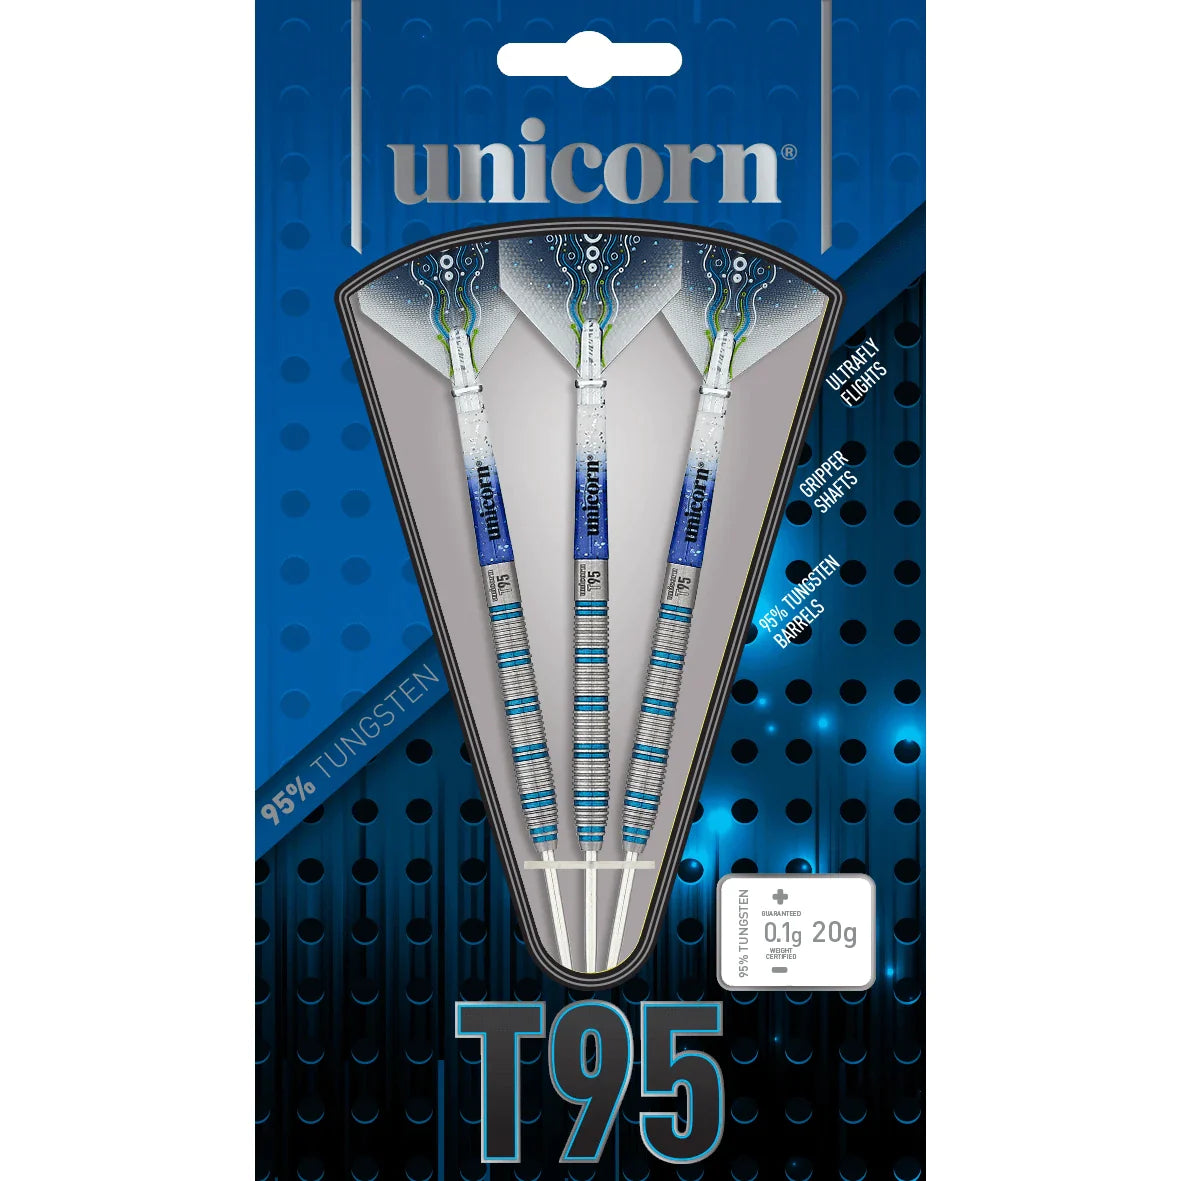 Unicorn T95 Core XL Blue 25g Darts